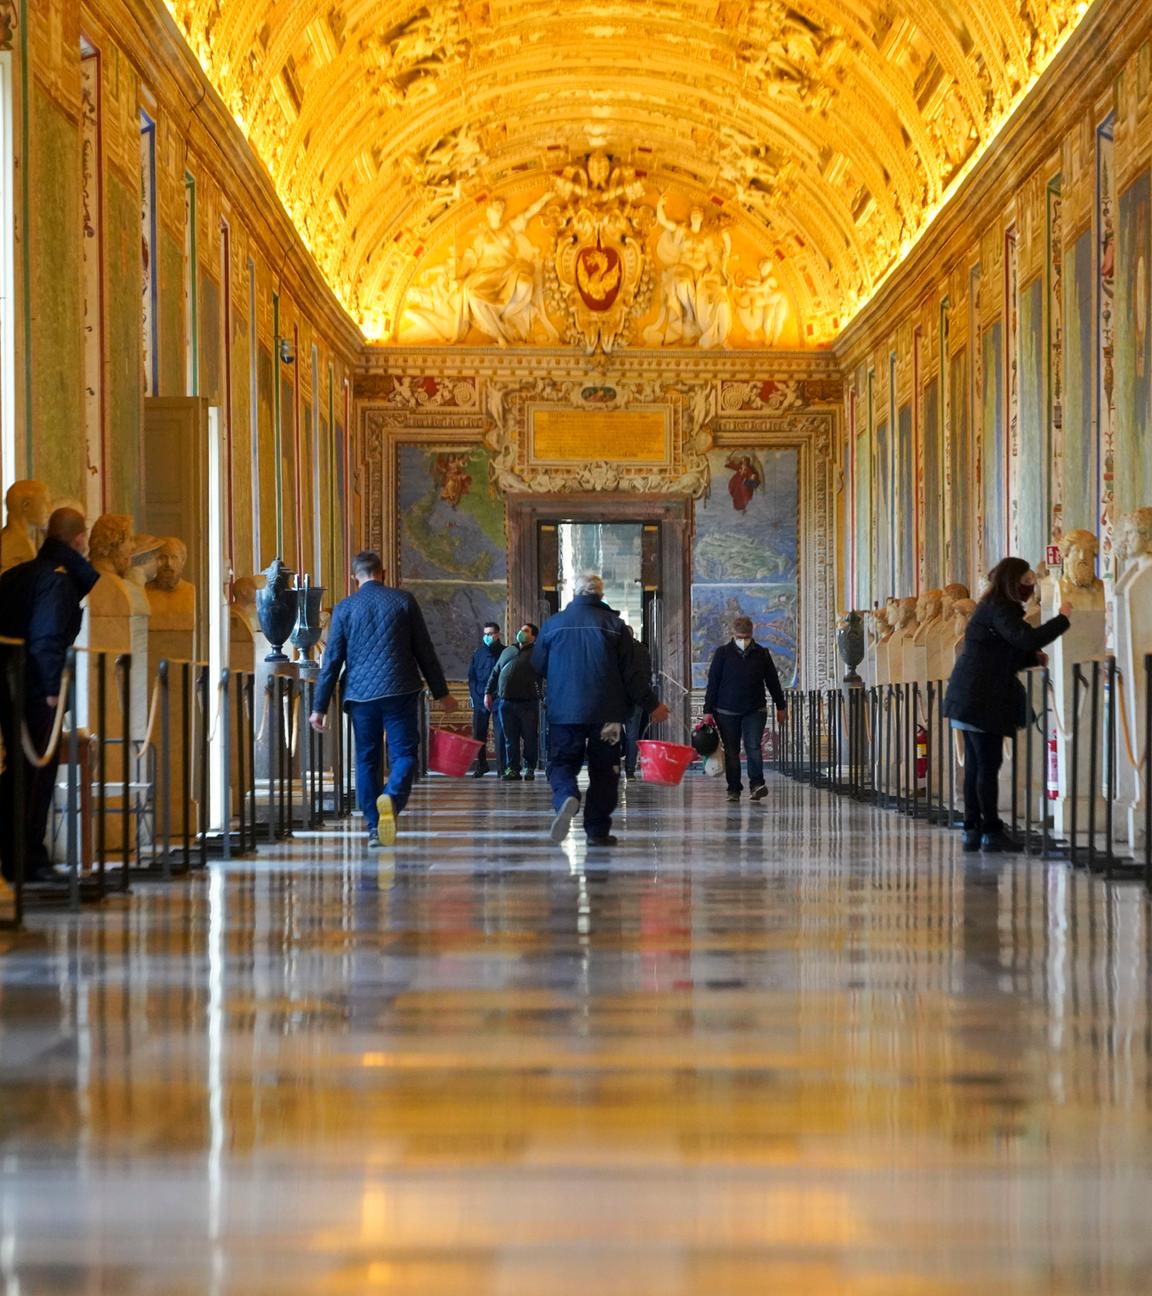 Angestellte der Vatikanischen Museen laufen vor der Öffnung durch die Gänge.